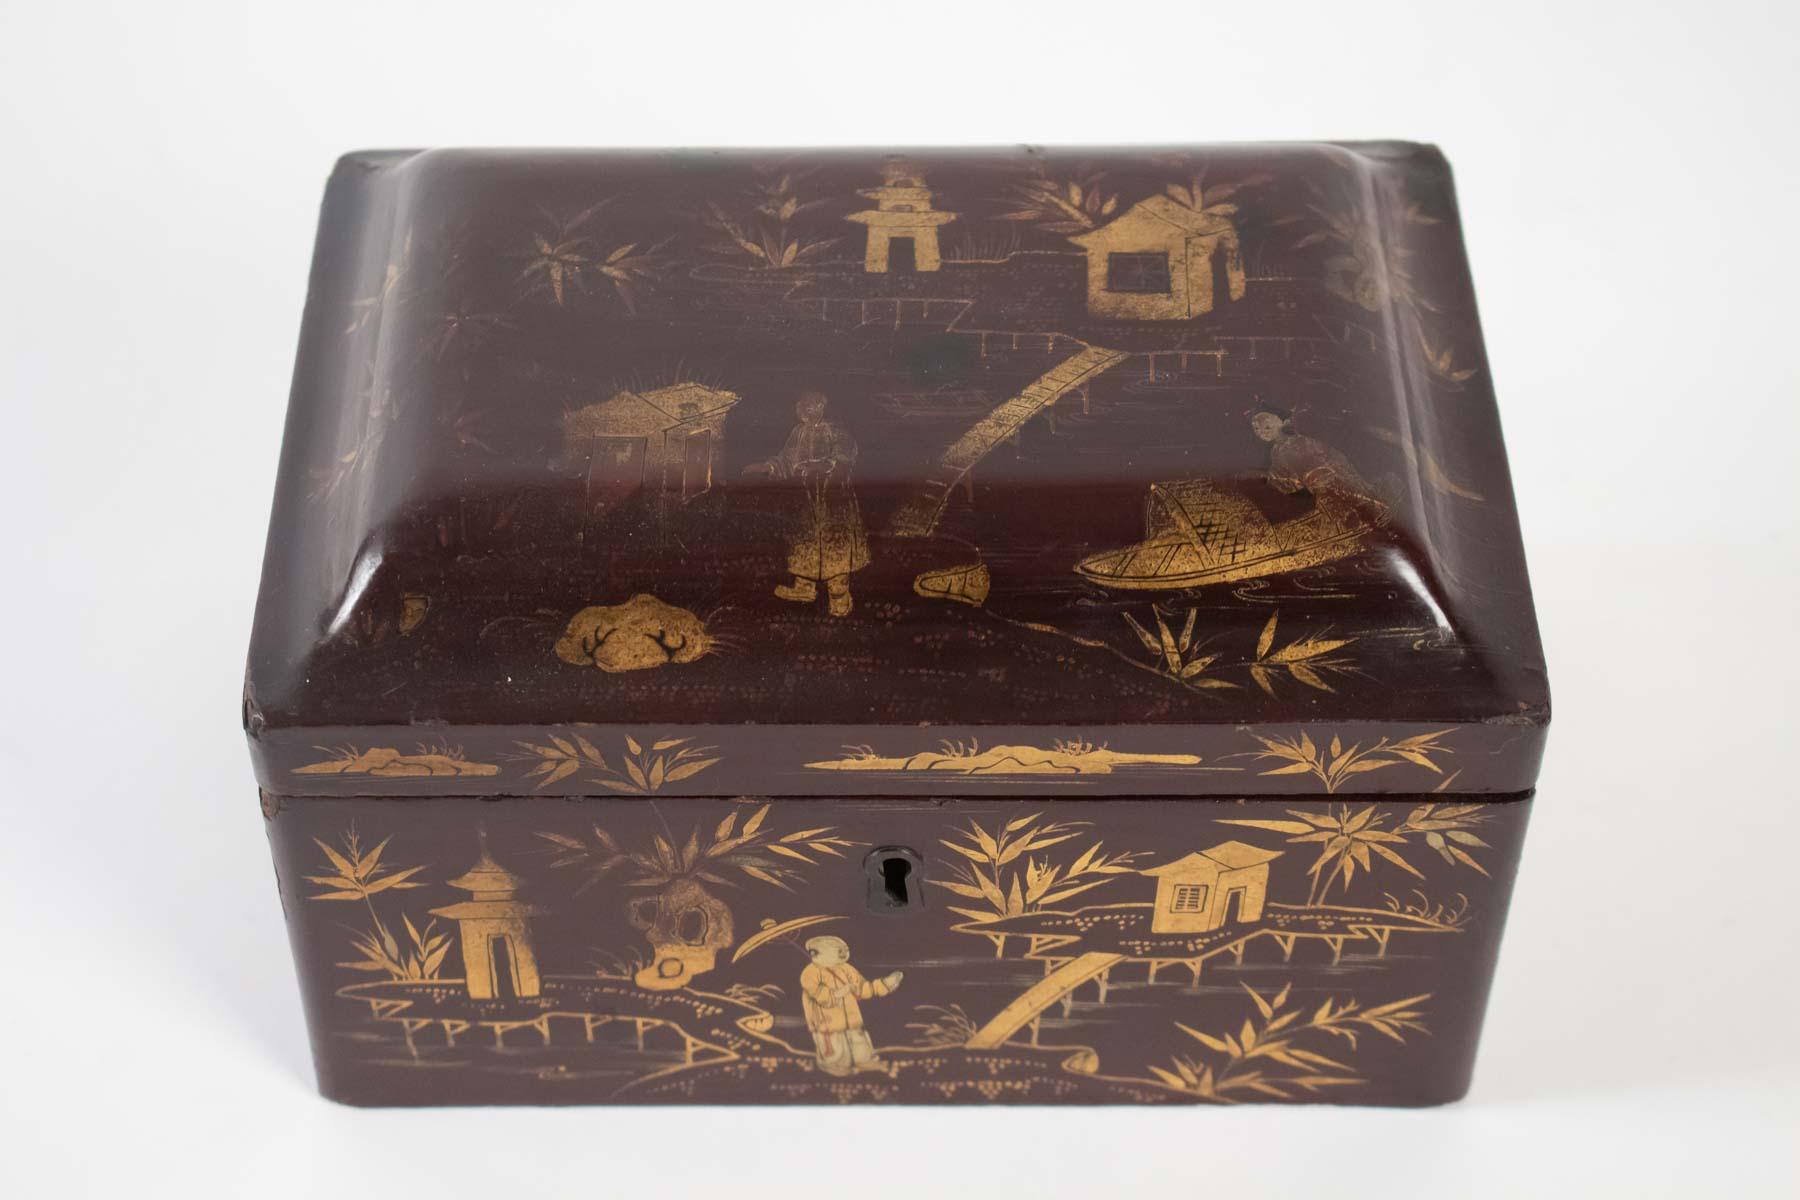 Lacquered tea box, China, 1925, pewter interior.
Measures: L 21 cm, H 12 cm, P 14 cm.